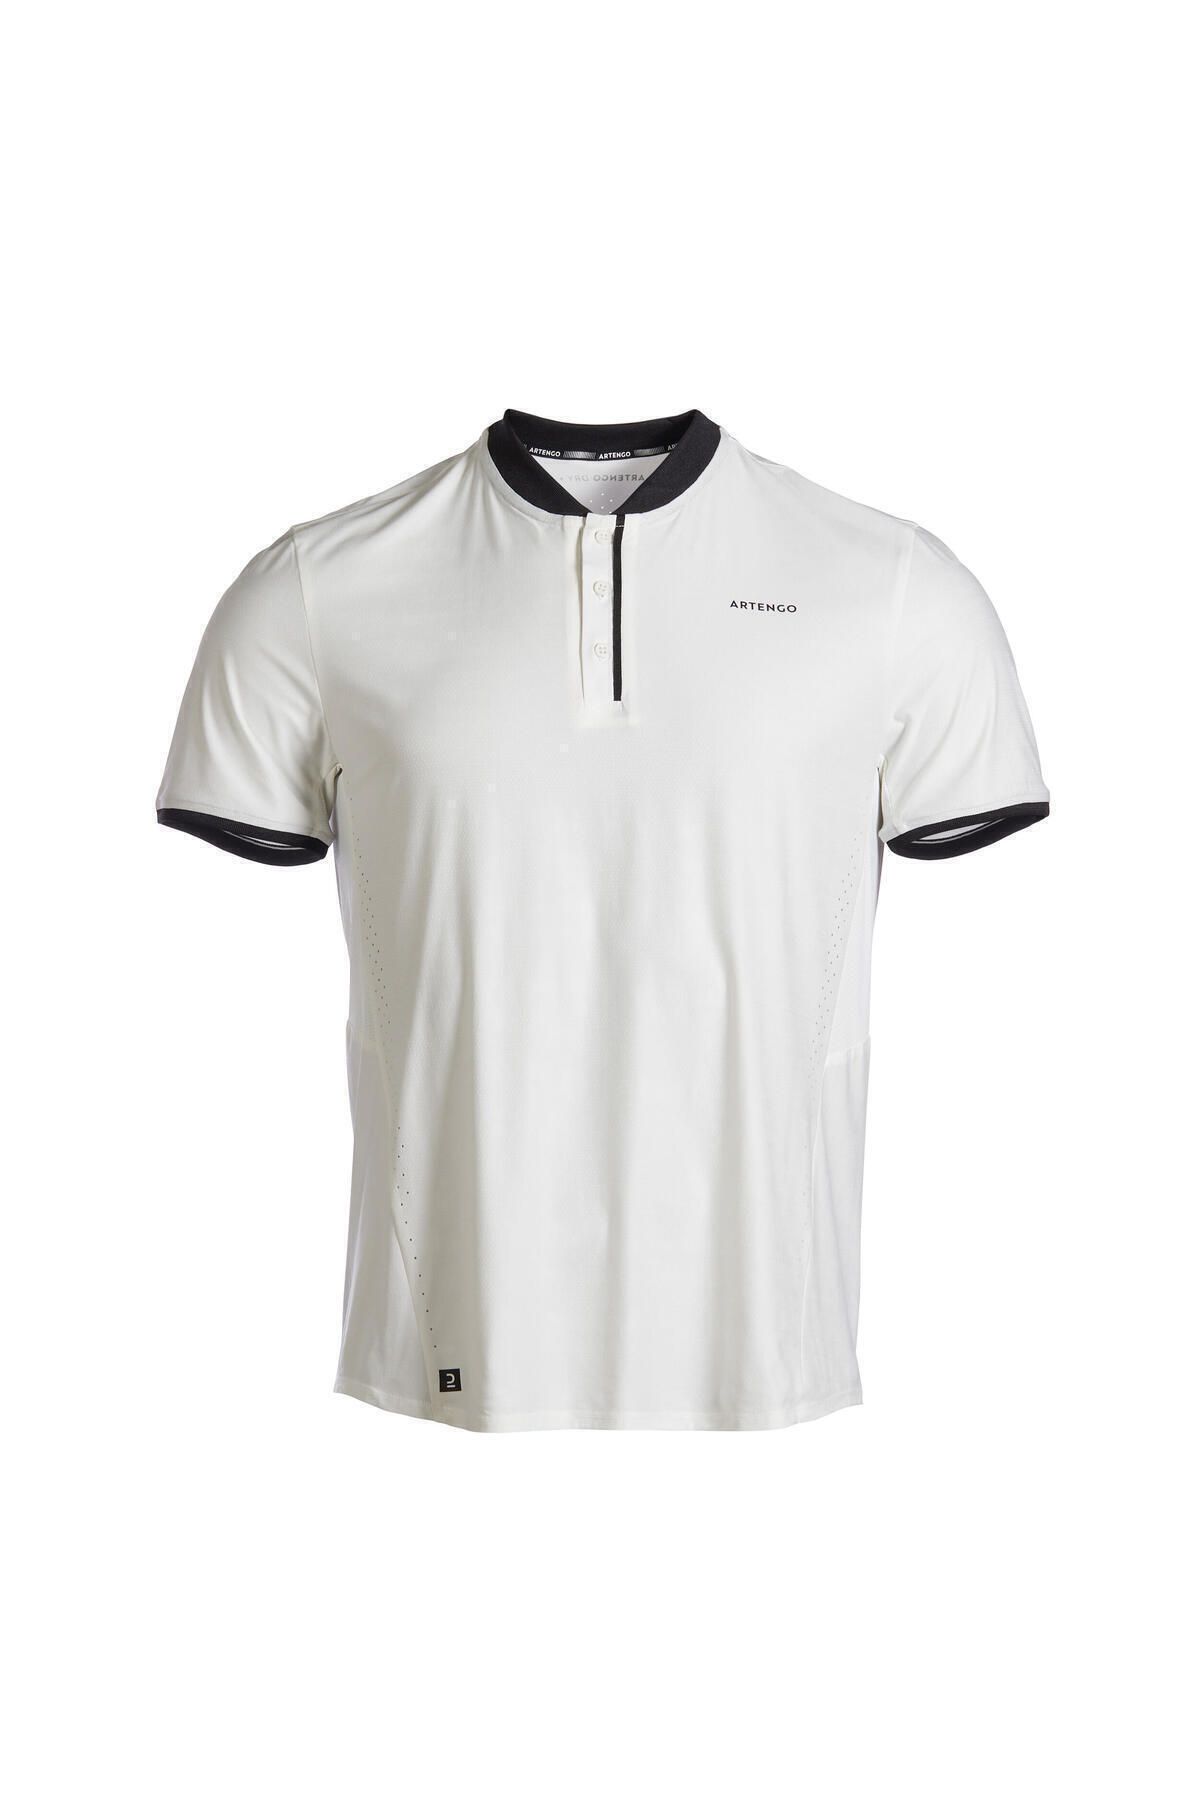 Decathlon Erkek Kısa Kollu Tenis Tişörtü - Kırık Beyaz - Dry